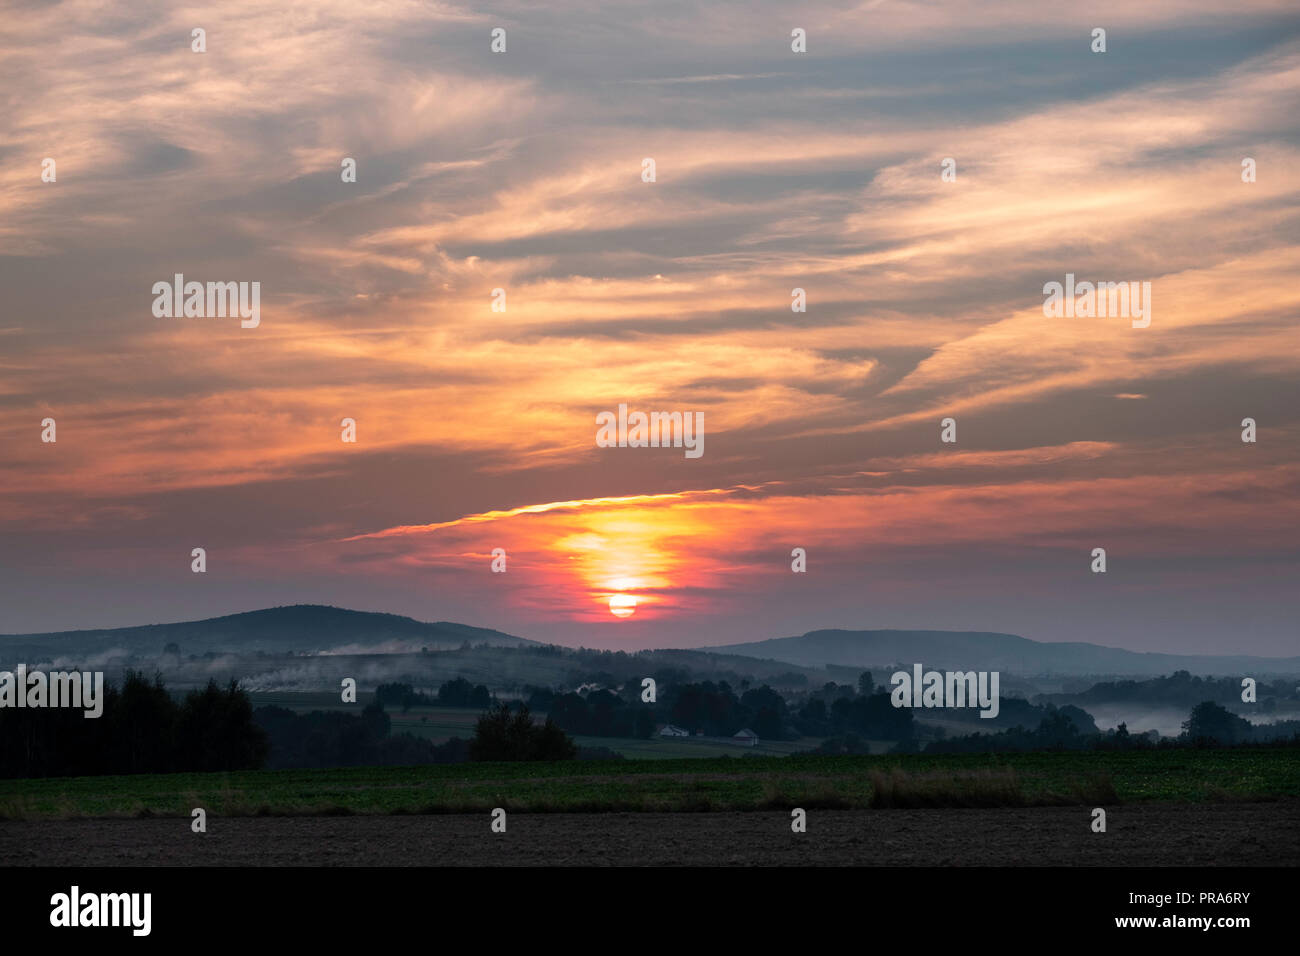 Coucher de soleil sur le paysage rural, région de Sainte-Croix, Pologne Banque D'Images